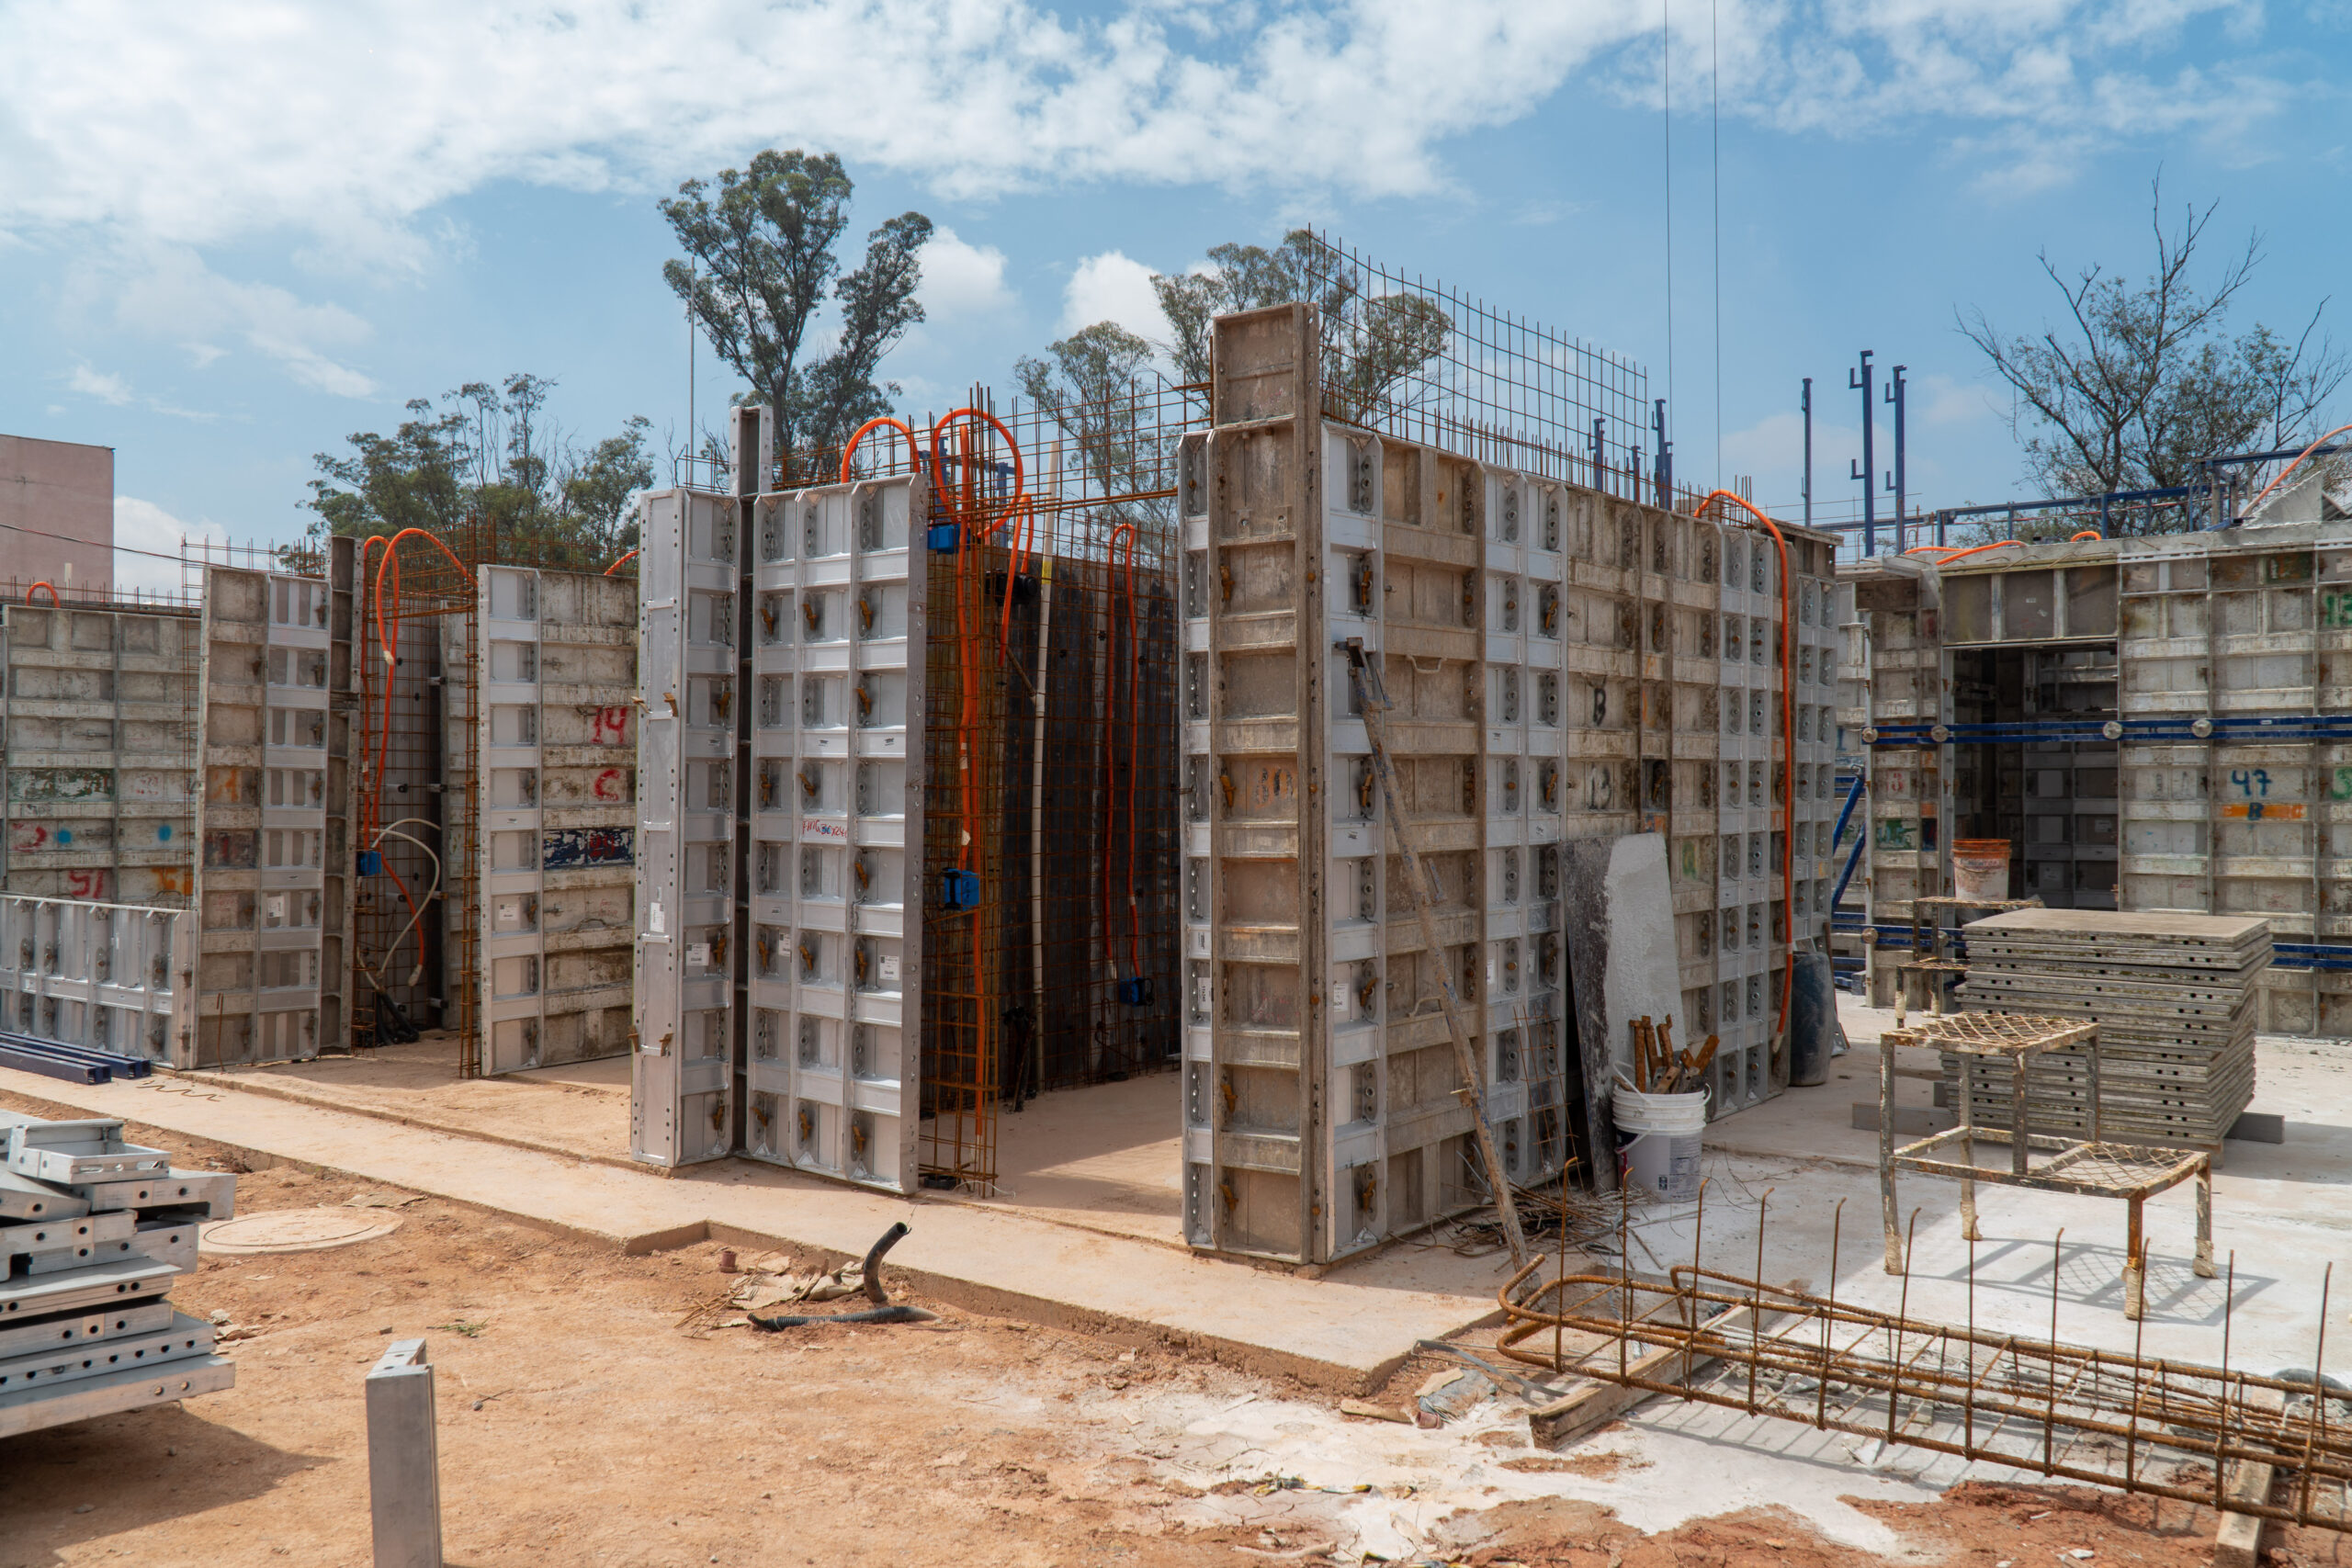 Empregos na construção: Emccamp Residencial oferece 14 oportunidades de trabalho no Rio de Janeiro